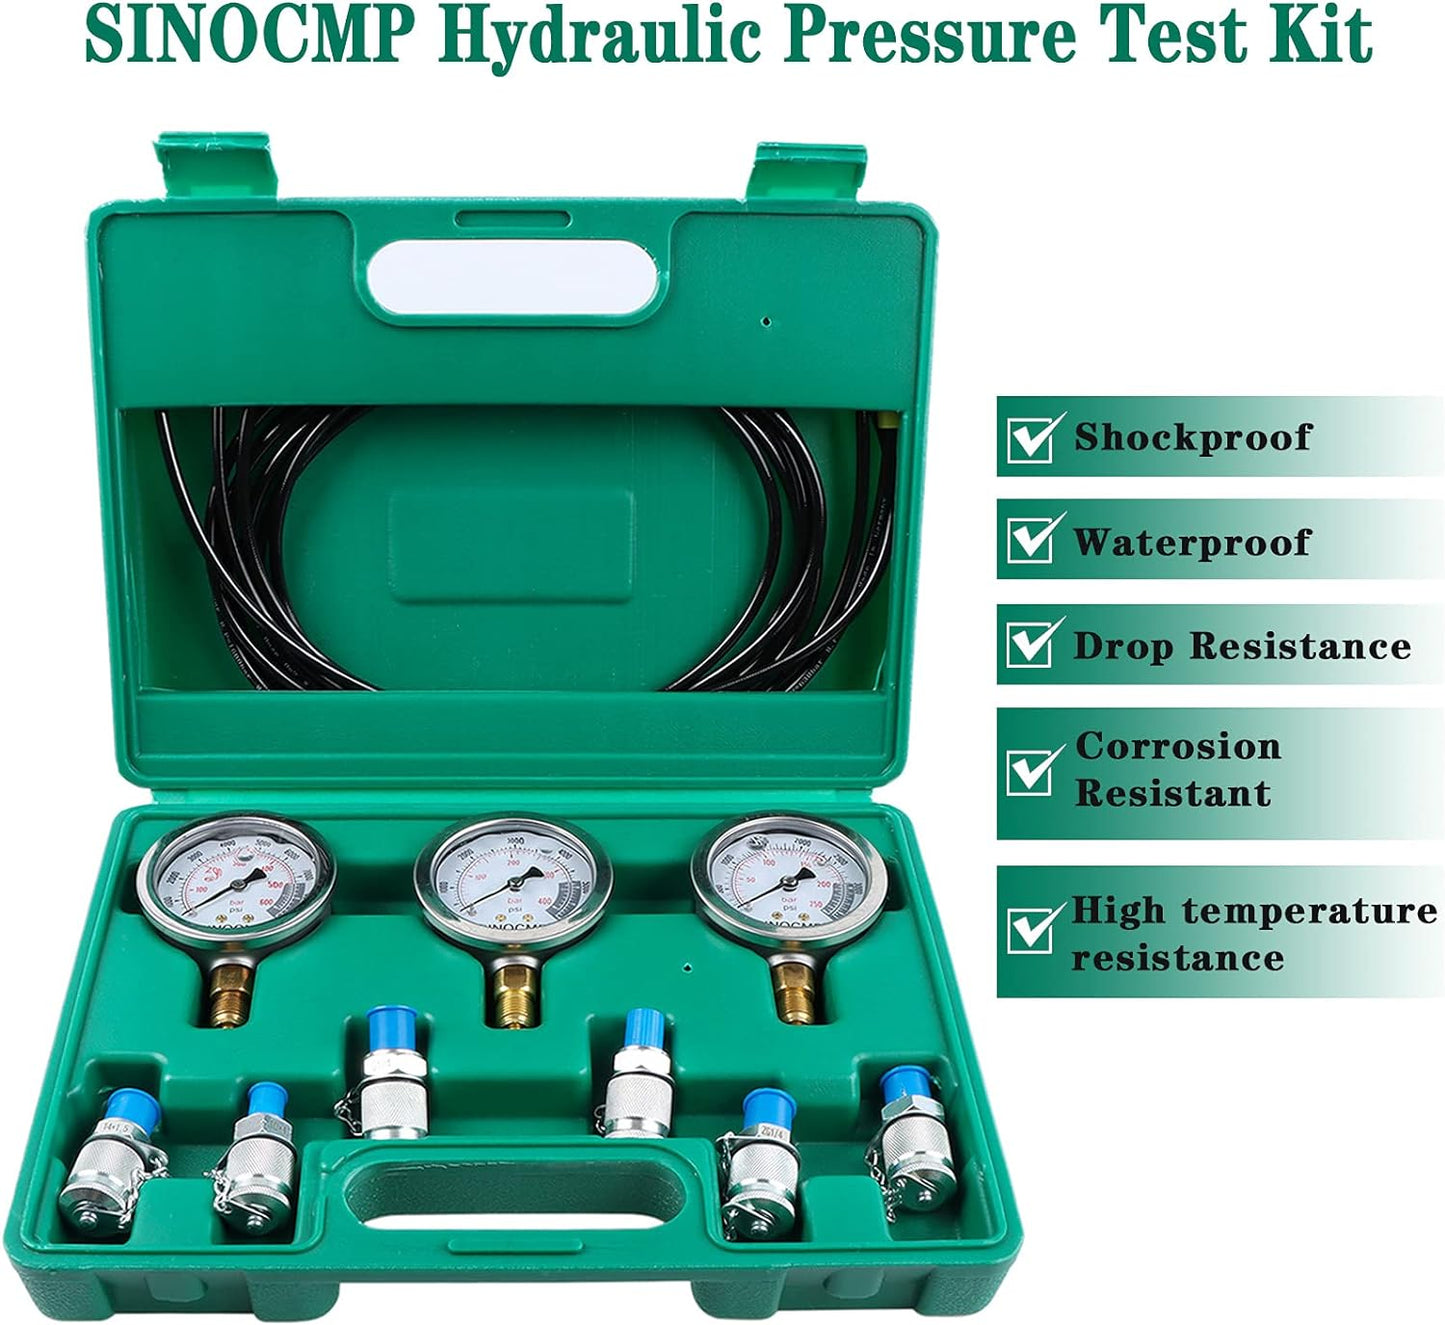 SINOCMP - Kit de manómetro hidráulico de versión actualizada, 25/40/60 MPa 3 manómetro 6 acoplamiento de prueba, 3 mangueras de prueba, 1 estuche de almacenamiento, kit de prueba de presión hidráulica para maquinaria de construcción de excavadoras